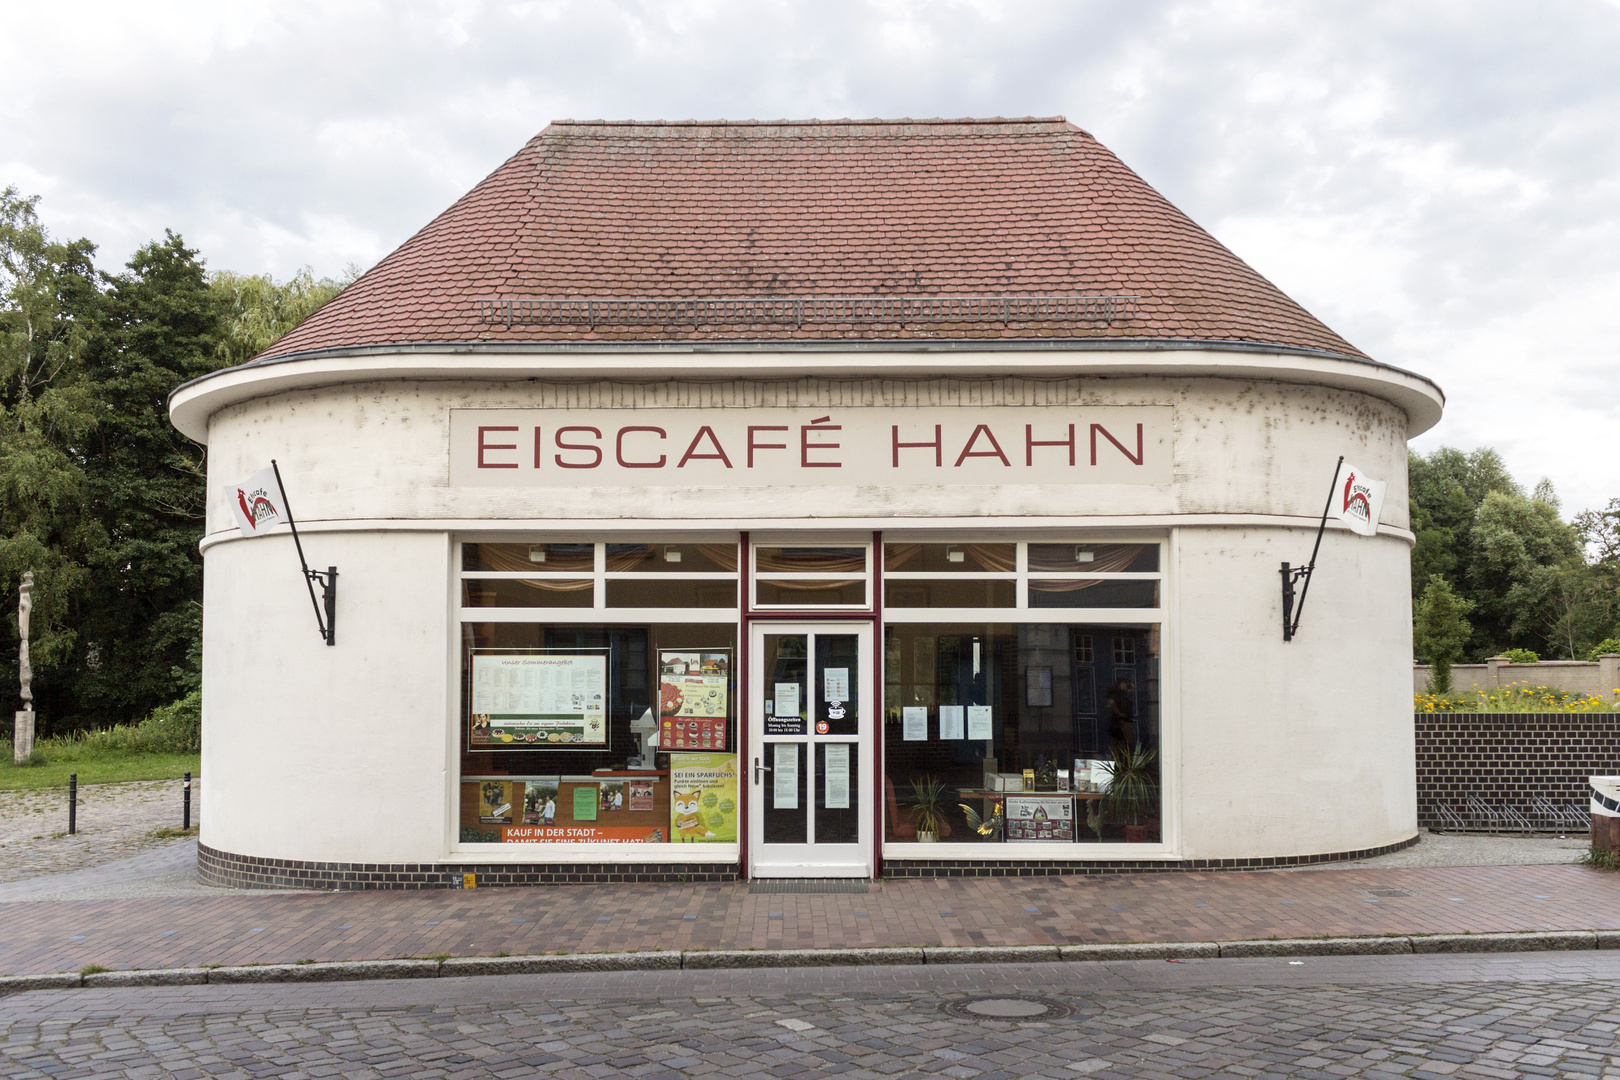 Eiscafé Hahn in Güstrow